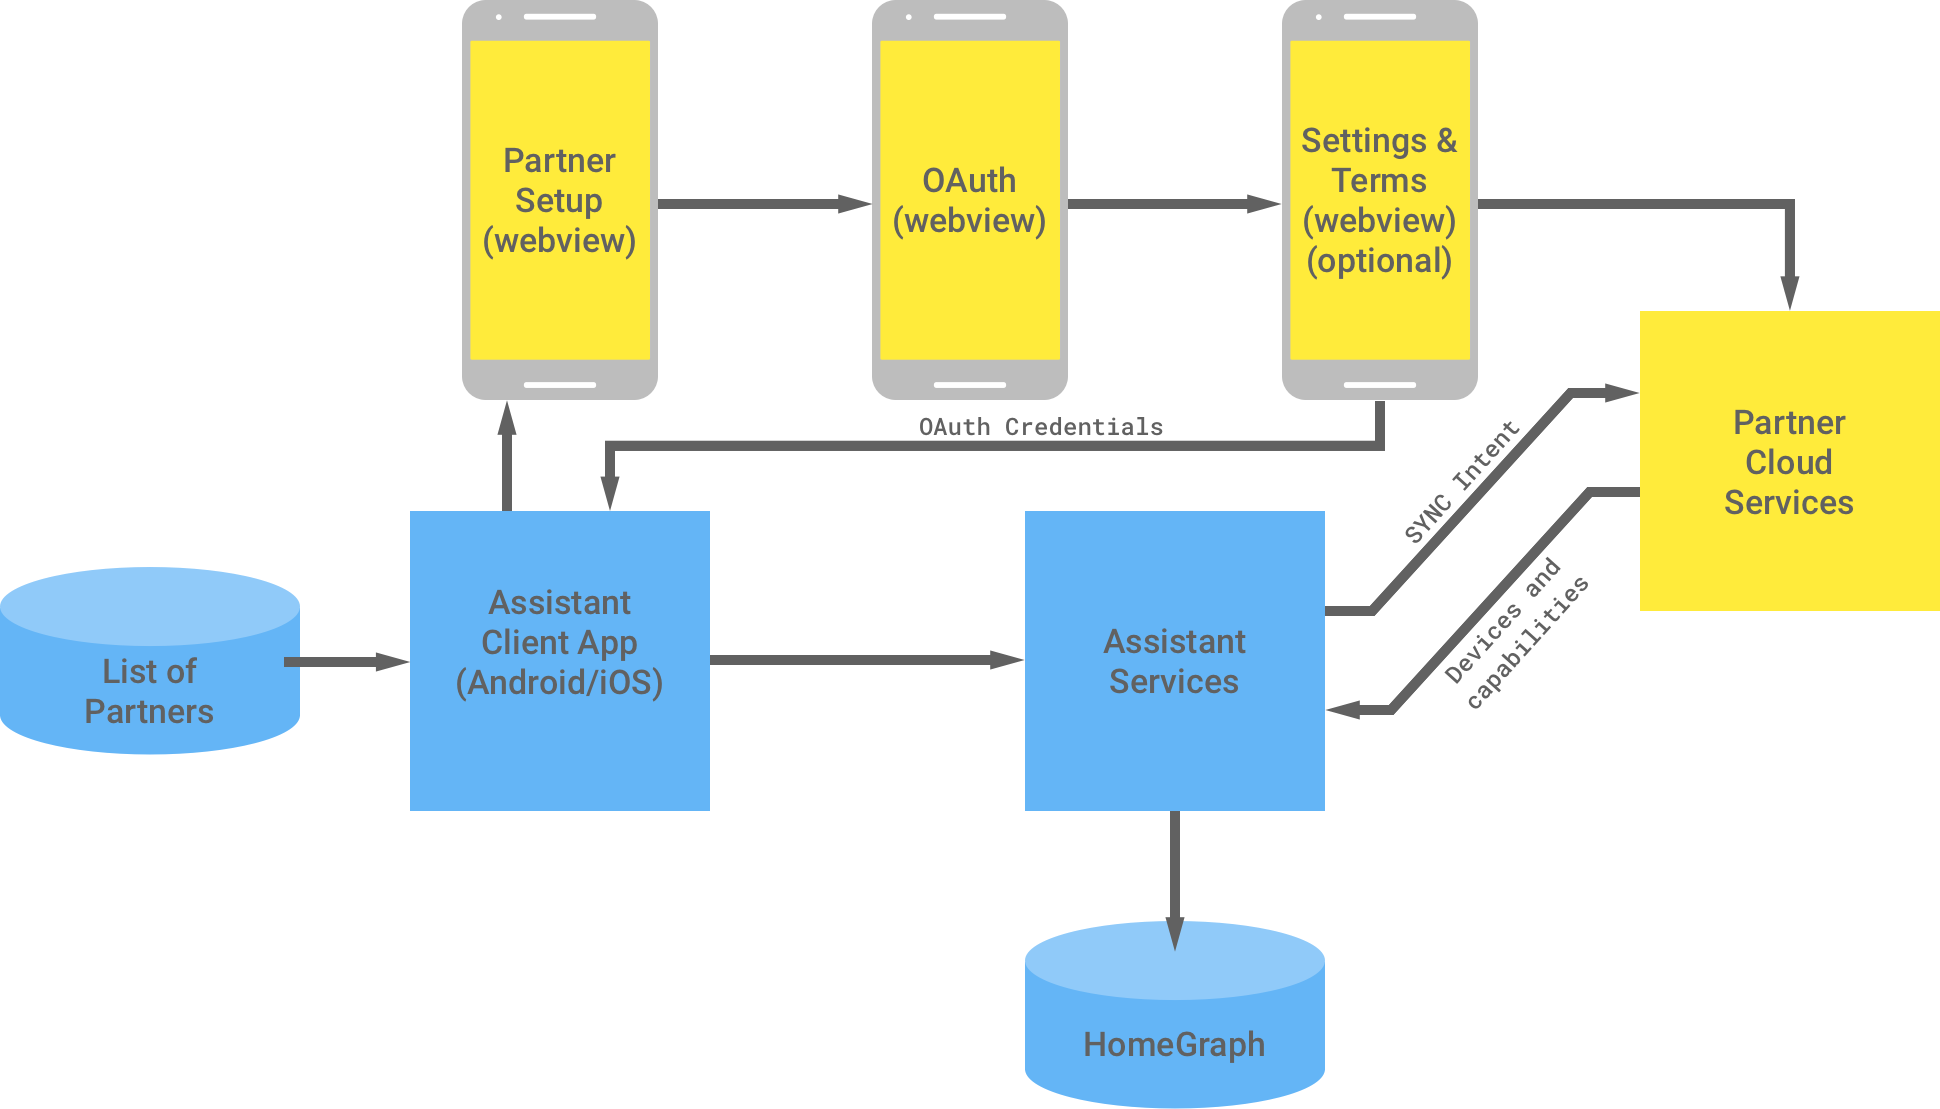 ويعرض هذا الشكل التفاعل بين بنية Google الأساسية
    والبنية الأساسية للشريك. ومن البنية الأساسية لـ Google، تتوفّر
    قائمة بالشركاء المتاحين لتطبيق عميل &quot;مساعد Google&quot; الذي
    يتدفق إلى البنية الأساسية للشريك لإكمال مصادقة OAuth. تتمثّل مصادقة OAuth من جهة الشريك في عرض الويب لإعداد الشريك وعرض WebView على الويب والإعدادات والبنود الاختيارية وخدمات السحابة الإلكترونية للشركاء. تعرض البنية الأساسية للشريك بعد ذلك بيانات اعتماد OAuth على تطبيق عميل &quot;مساعد Google&quot;. وتُرسِل خدمات السحابة الإلكترونية للشريك الأجهزة والإمكانات المتوفرة إلى خدمات &quot;مساعد Google&quot;، التي تحفظ المعلومات في الرسم البياني الرئيسي.